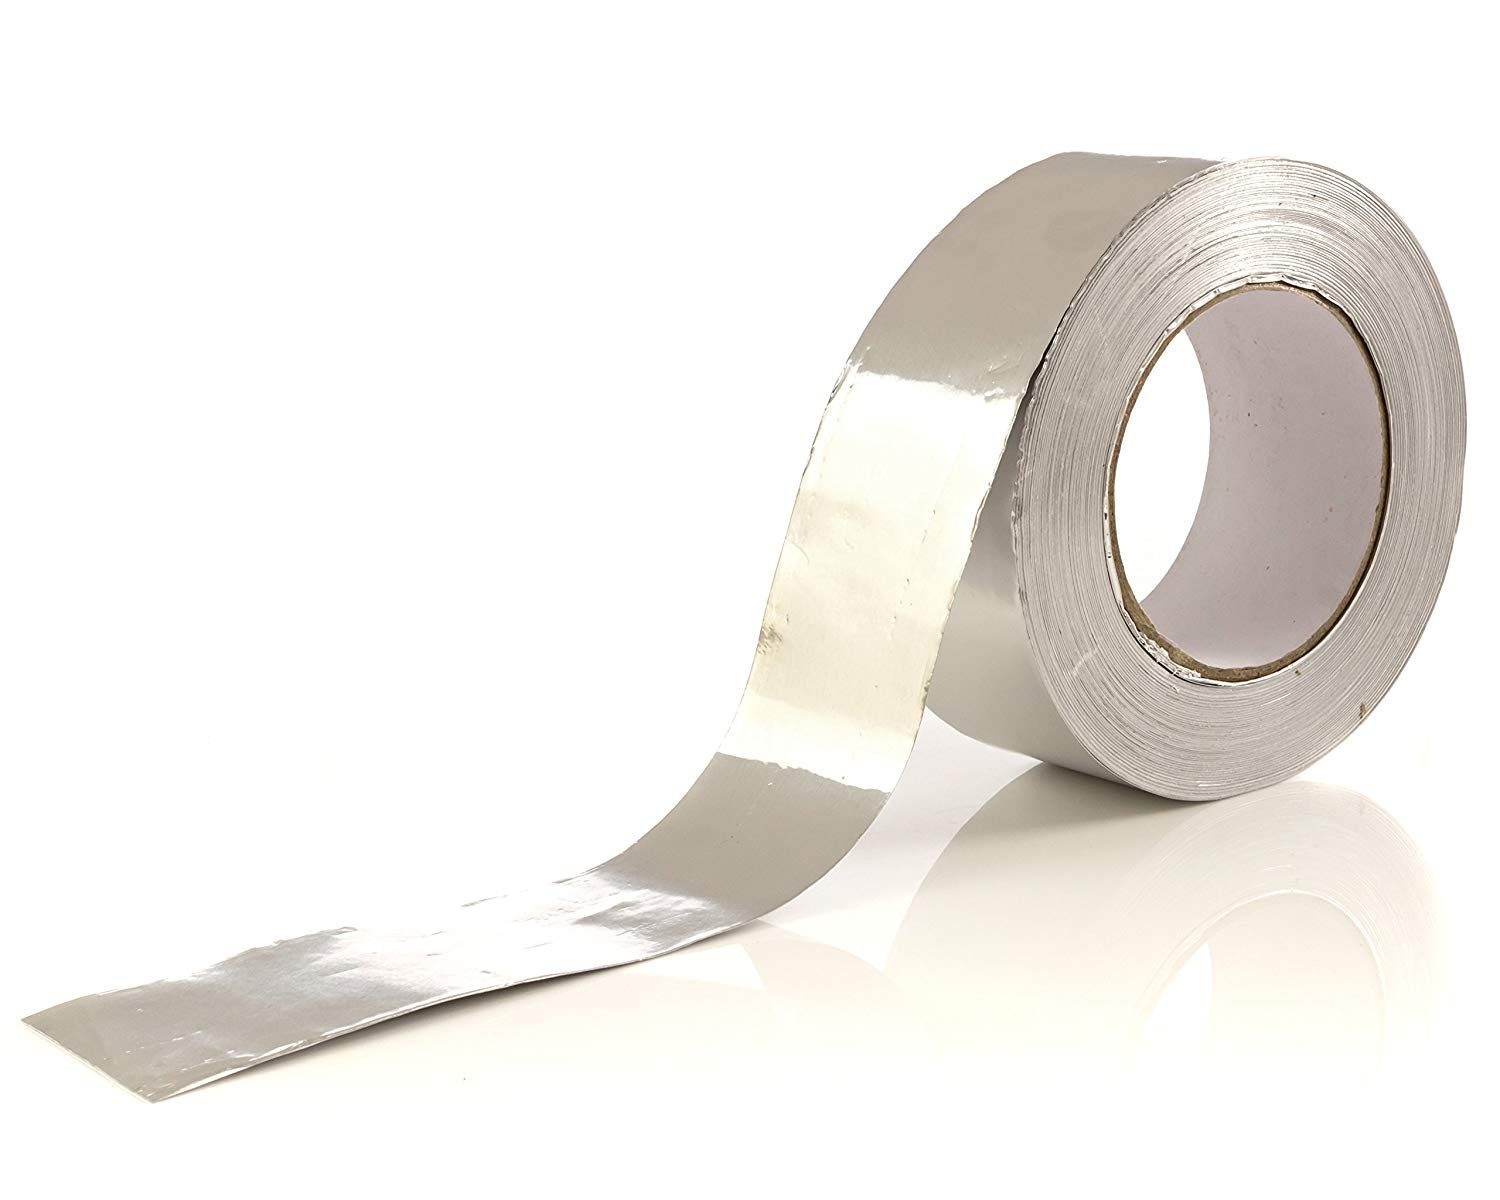  Aluminum Adhesive Tape